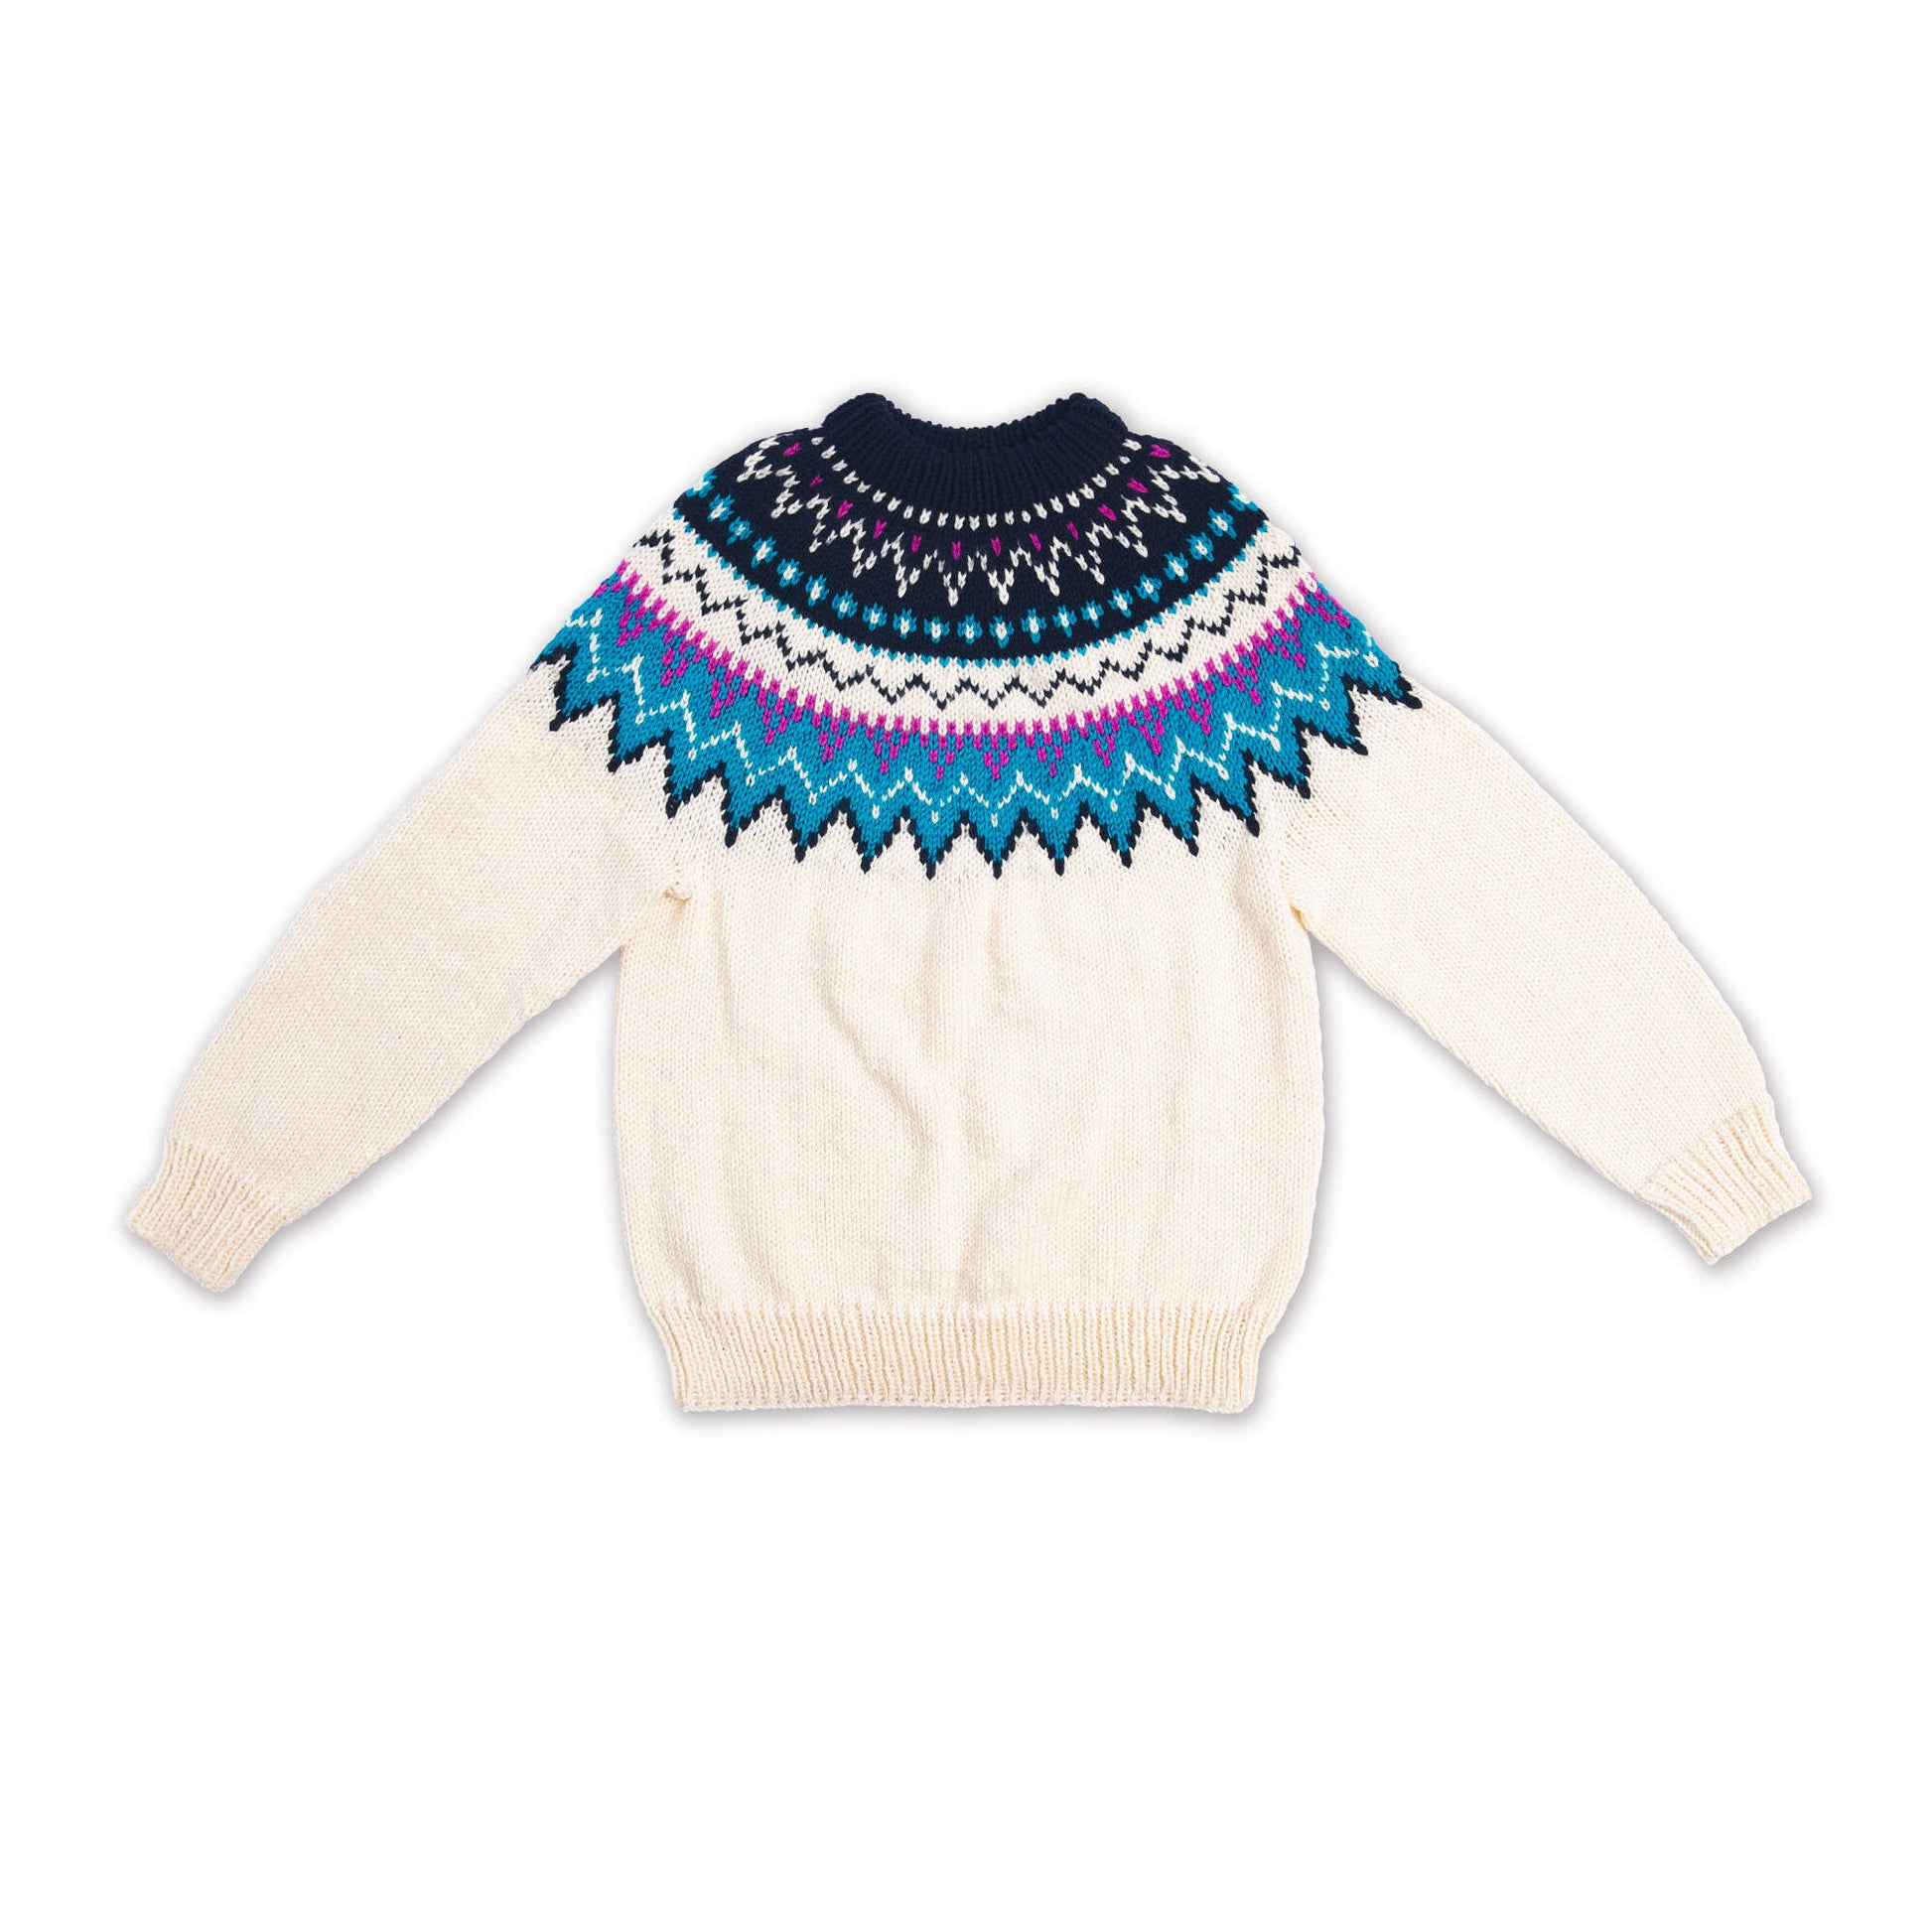 Free Bernat Family Knit Adult Yoke Sweater Pattern